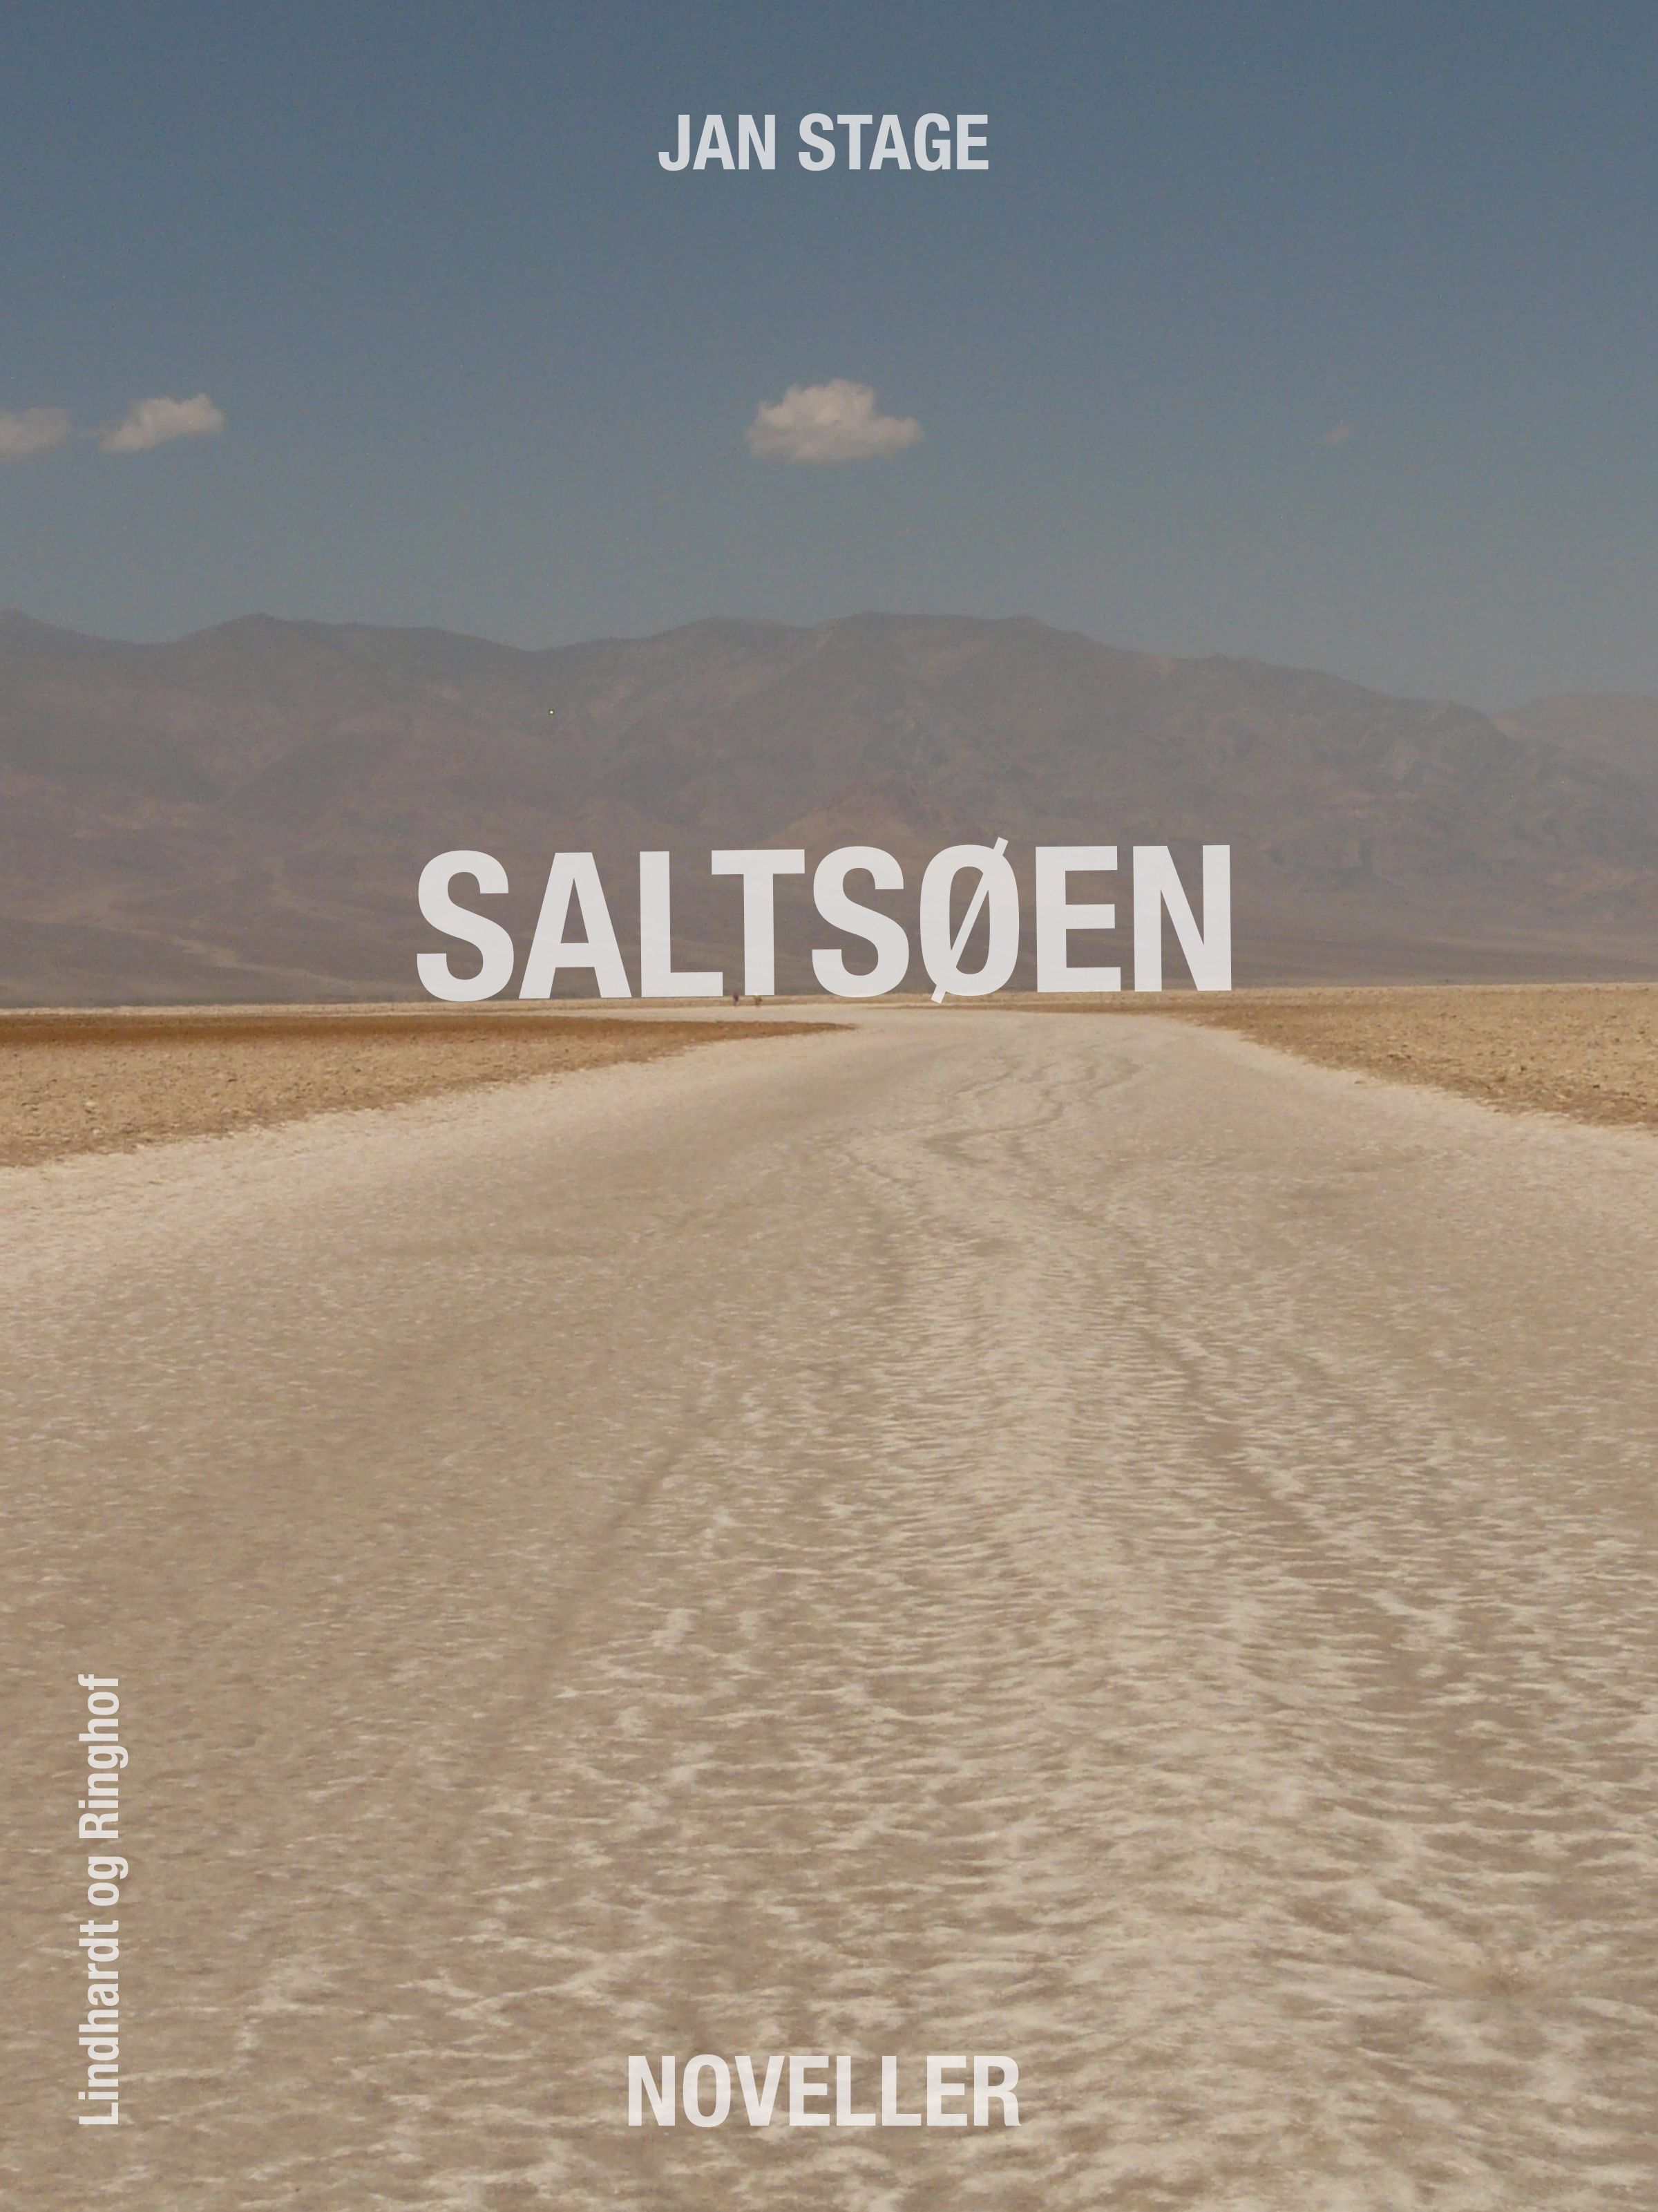 Saltsøen, e-bok av Jan Stage